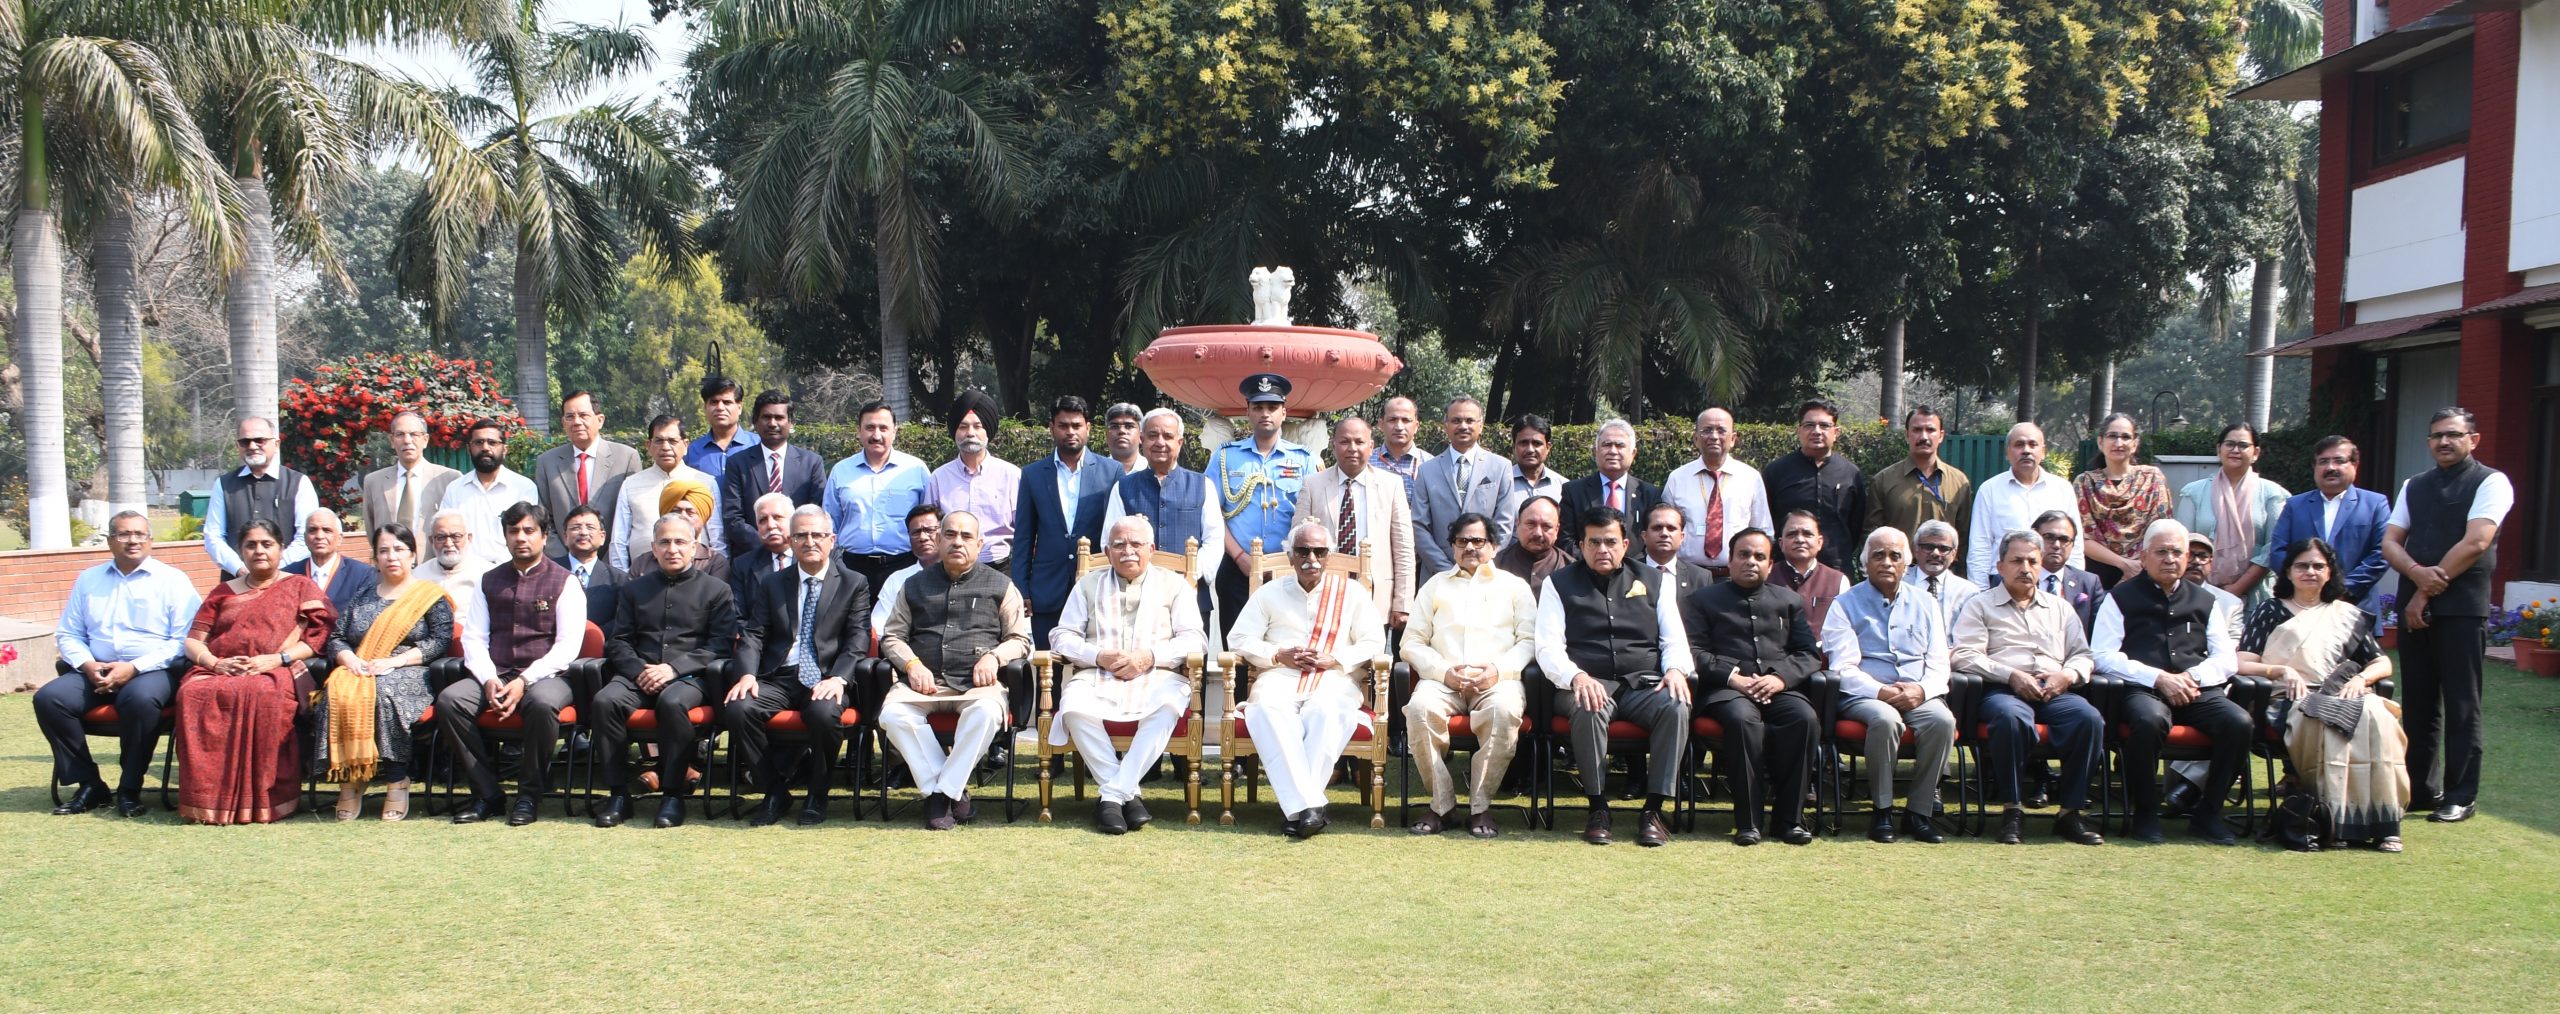 राज्यपाल श्री बंडारू दत्तात्रेय राजभवन में आयोजित निजी विश्वविद्यालयों के कुलपति व कुलसचिवों के साथ समूह चित्र